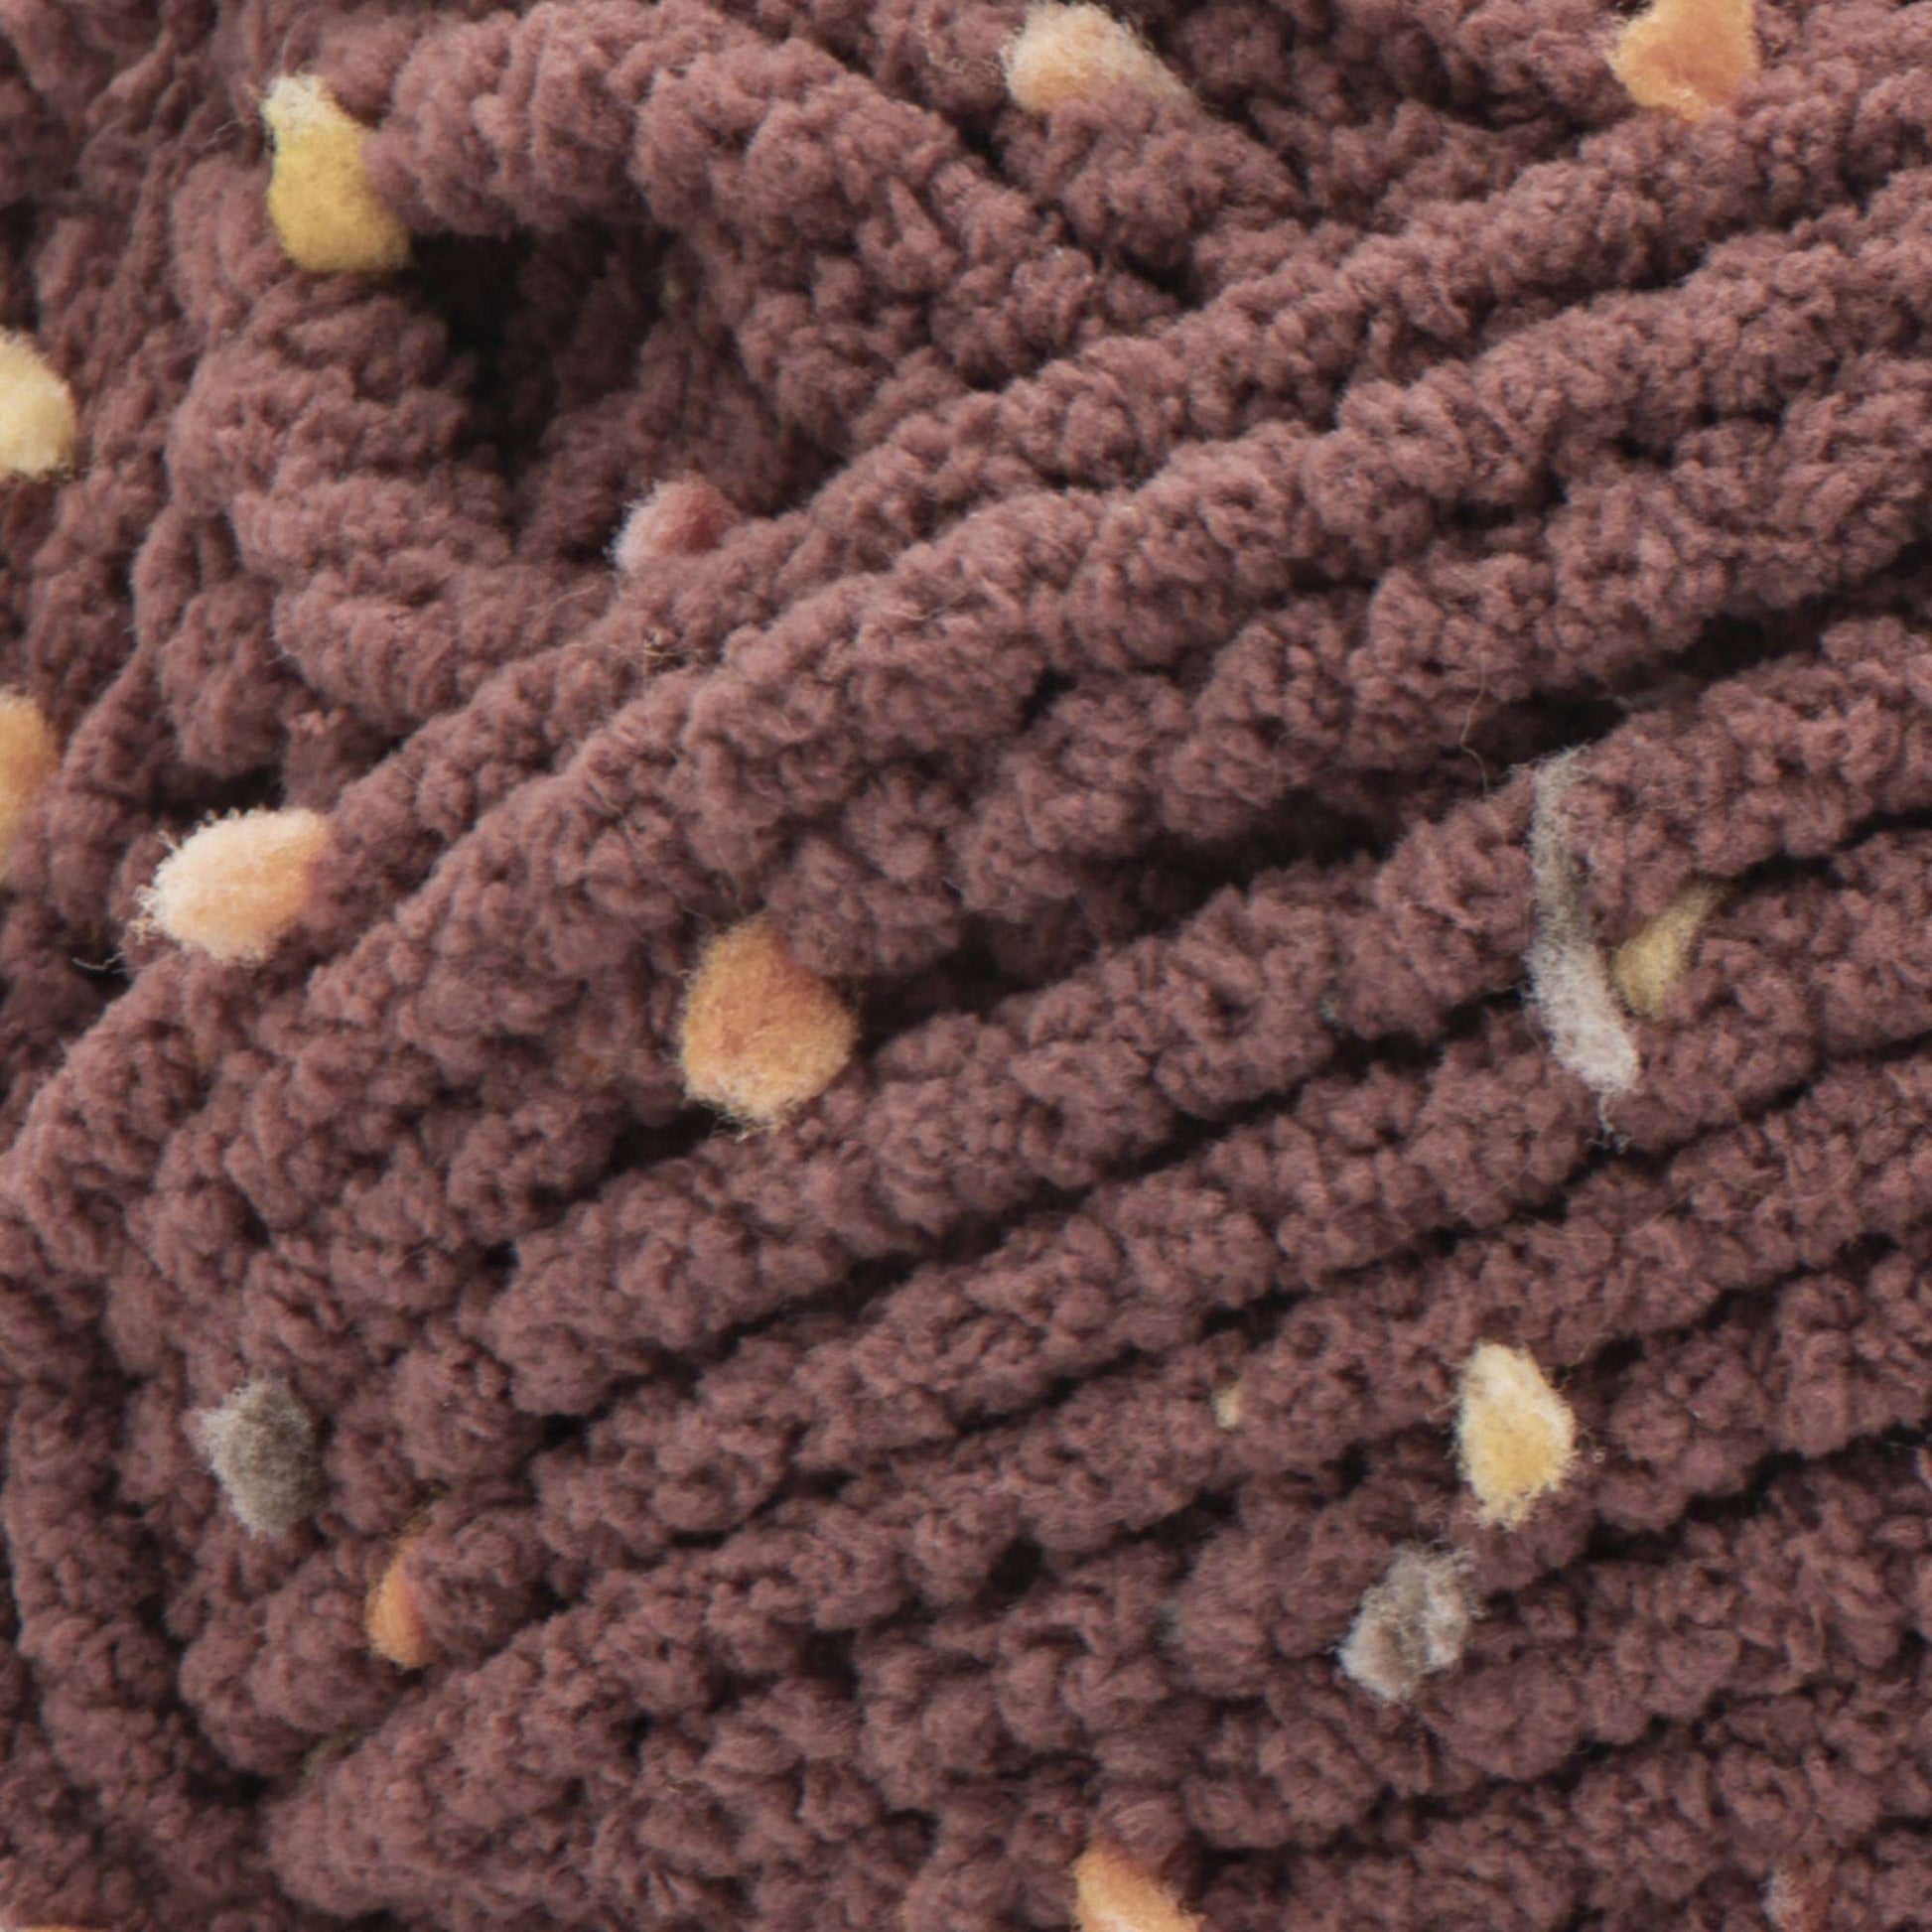 Bernat Blanket Confetti Yarn - Discontinued shades